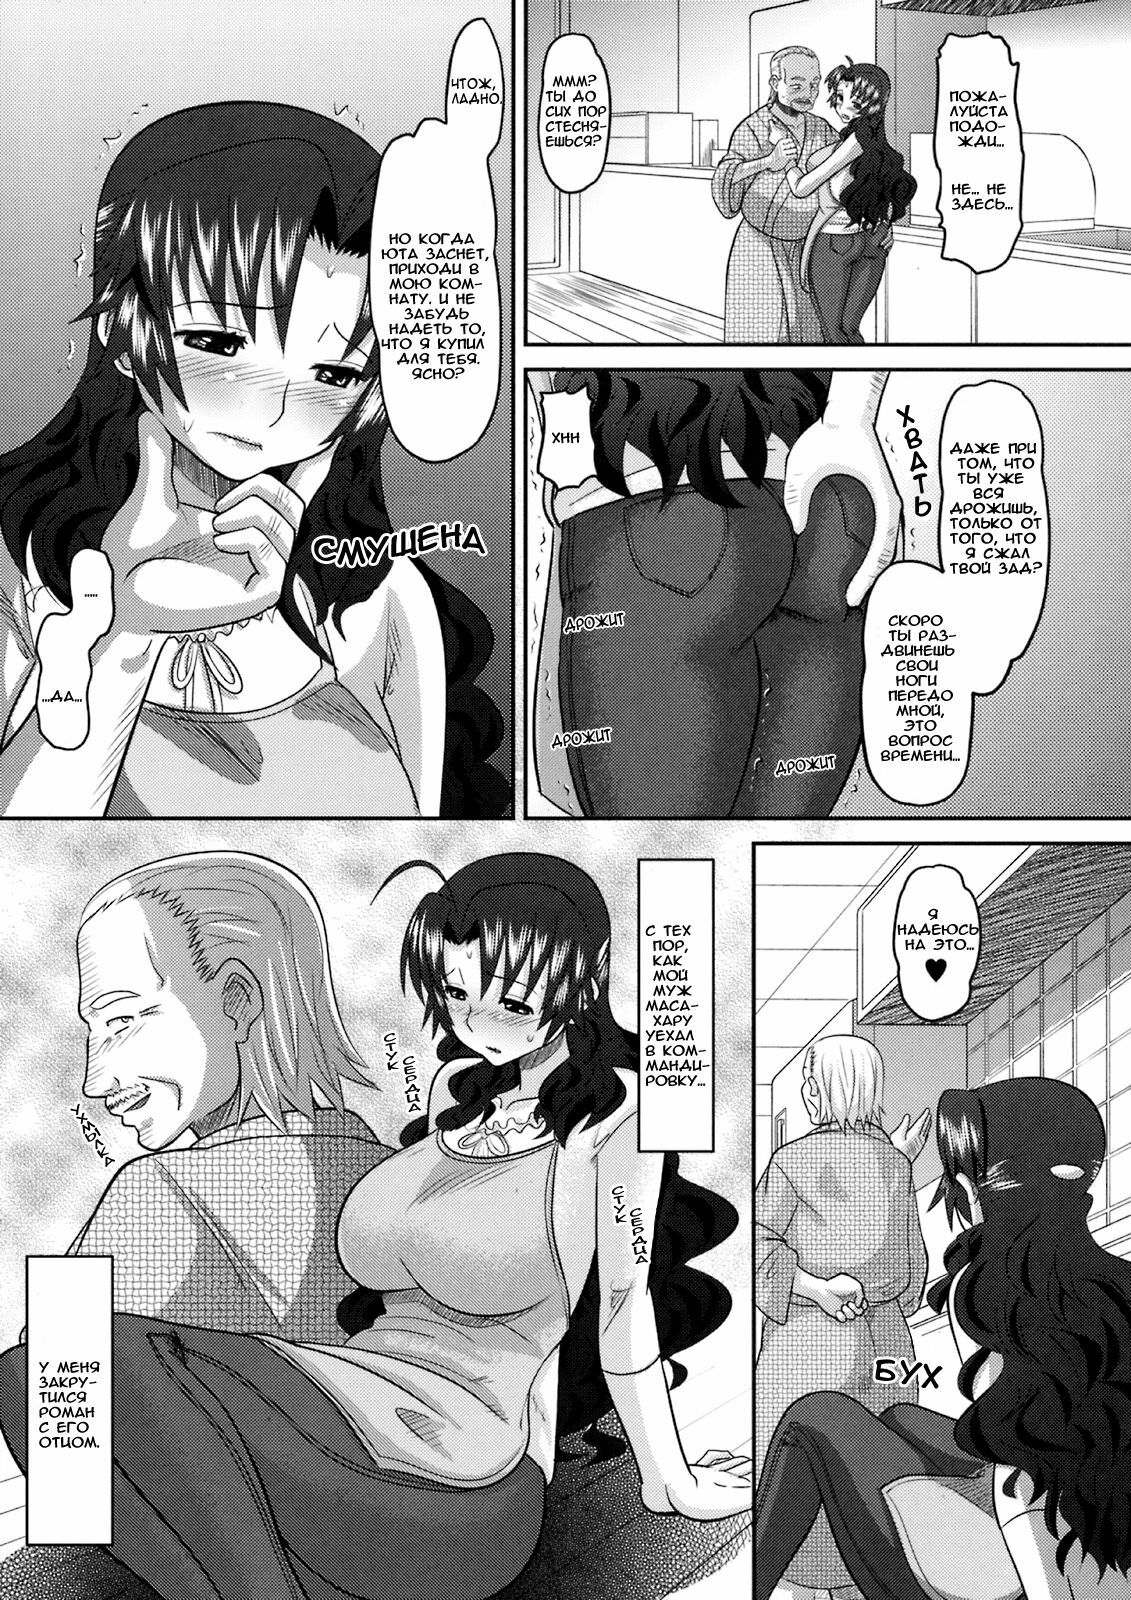 [Norakuro Nero][Toranoana] Shinzui Vol. 8 Ch. 1 (Russian) (Uncensored) page 3 full